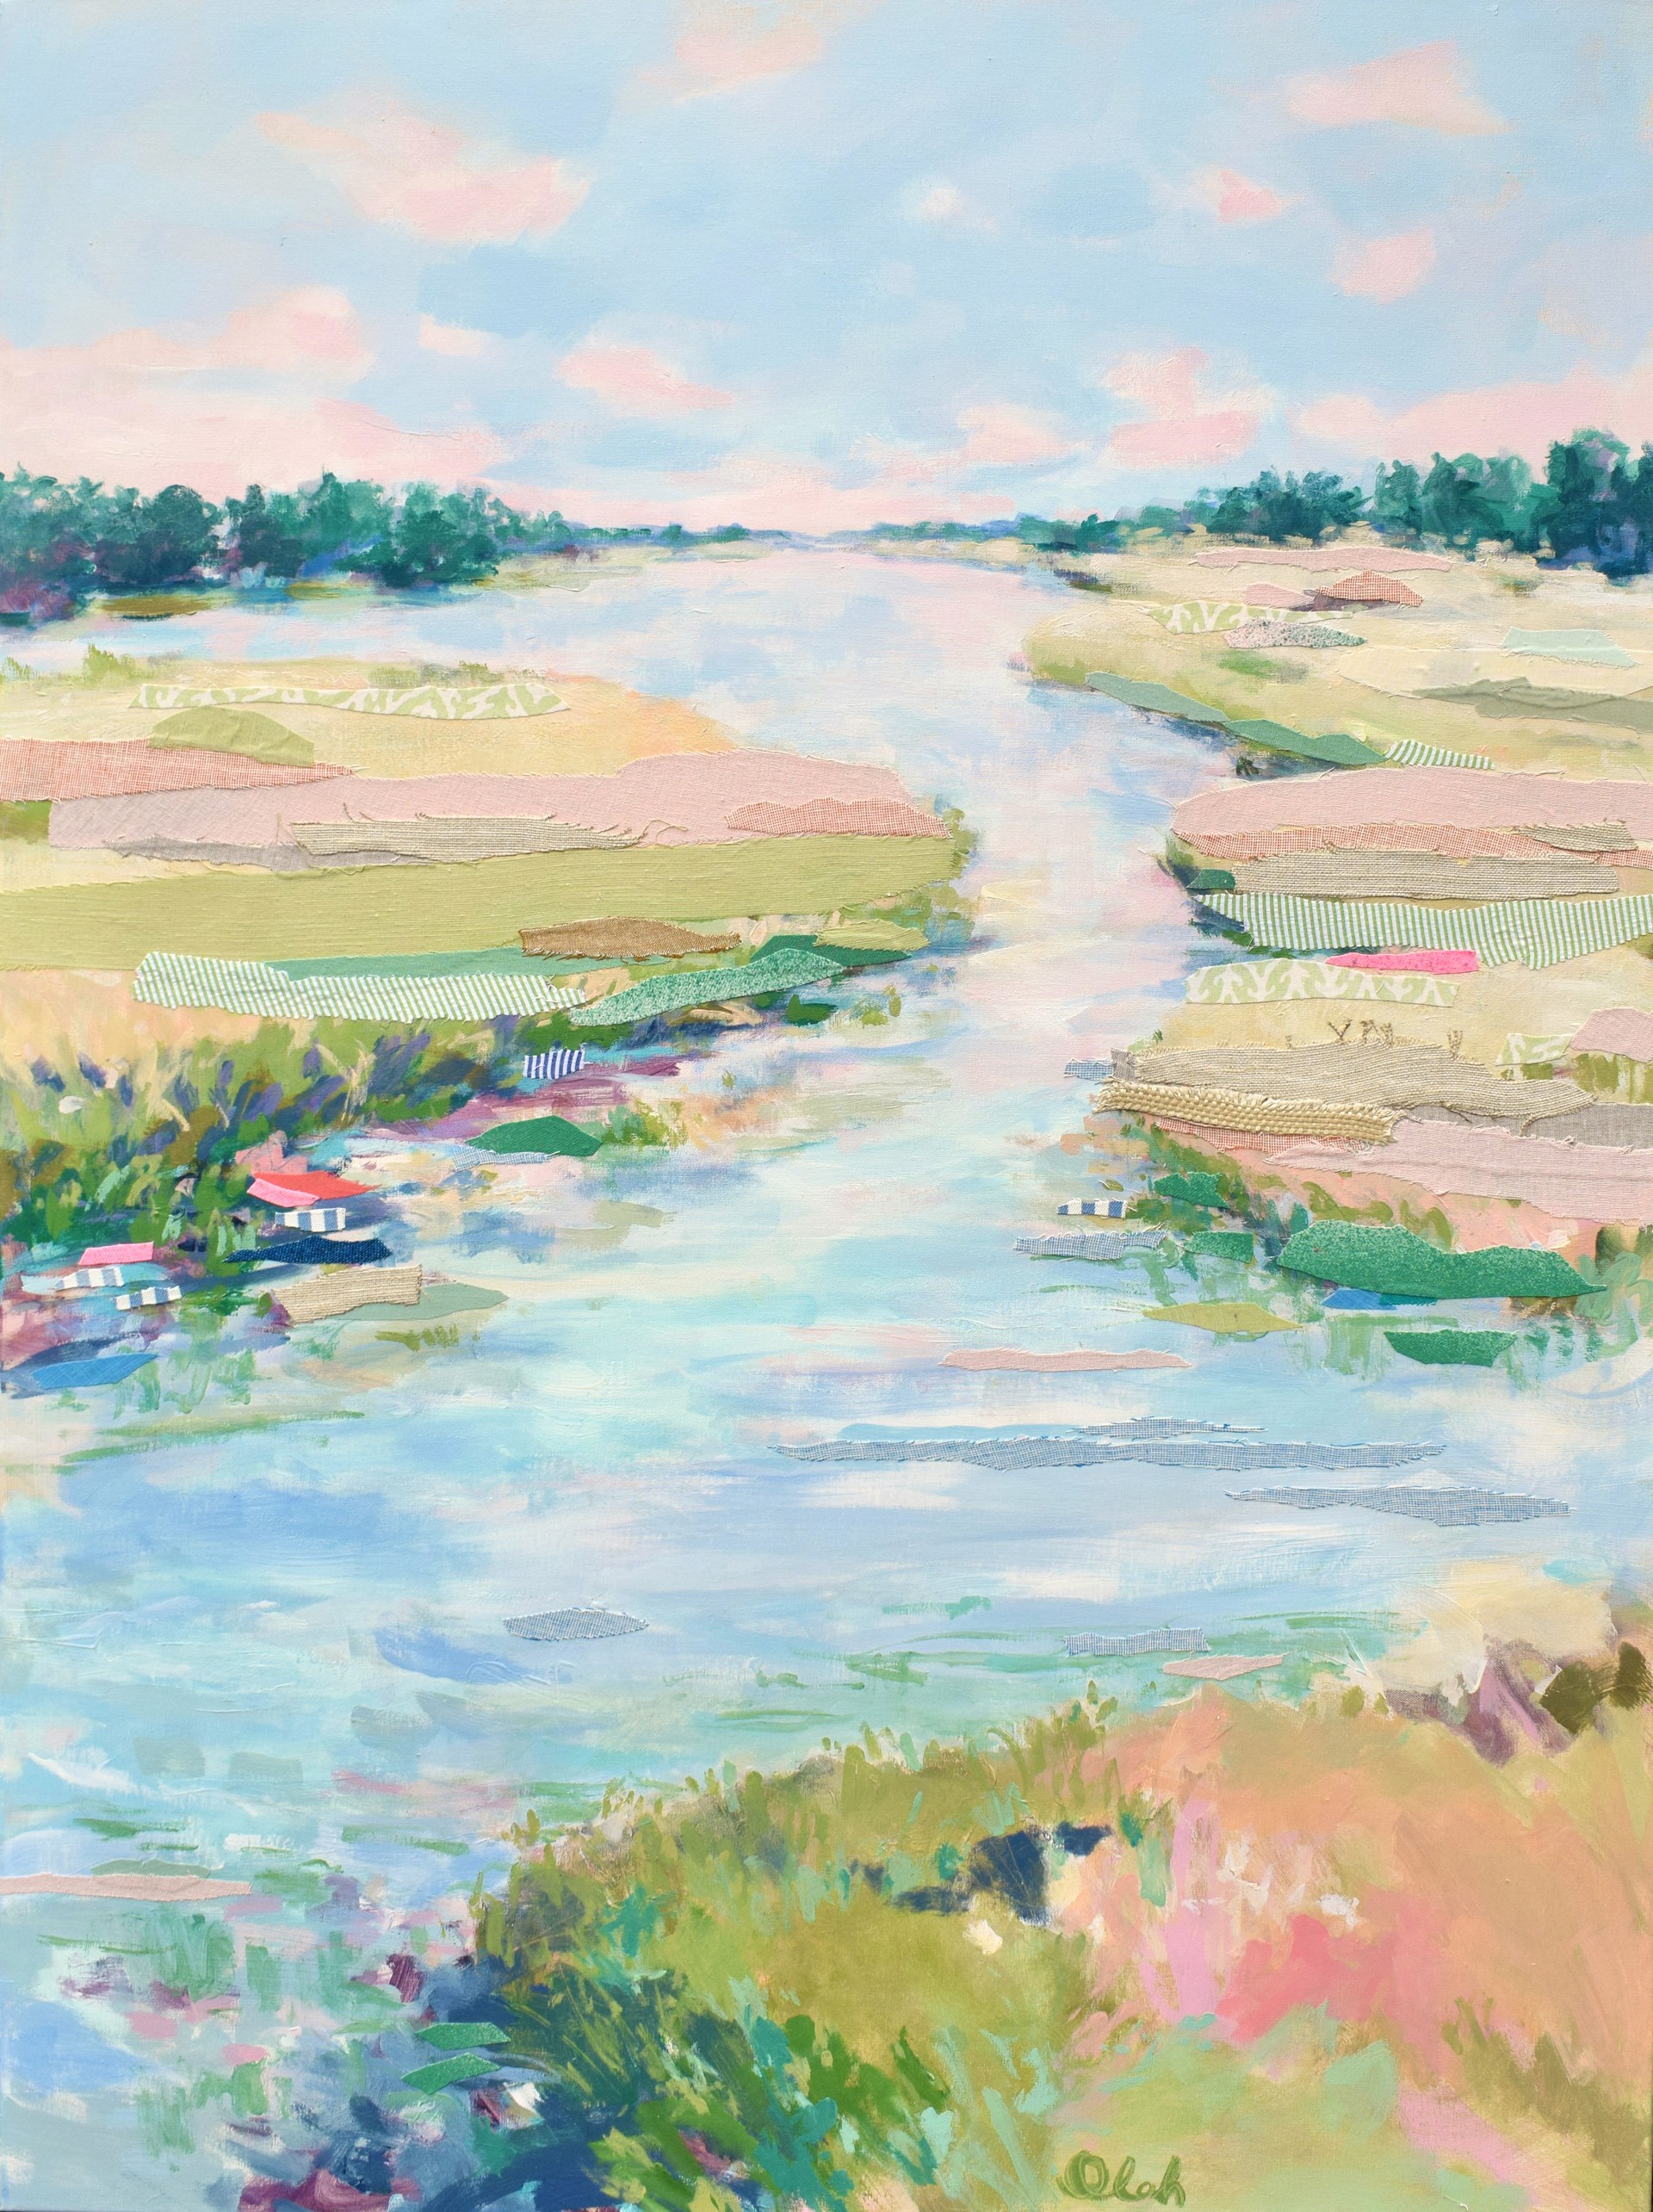 River Quilt 5 by Karin Olah